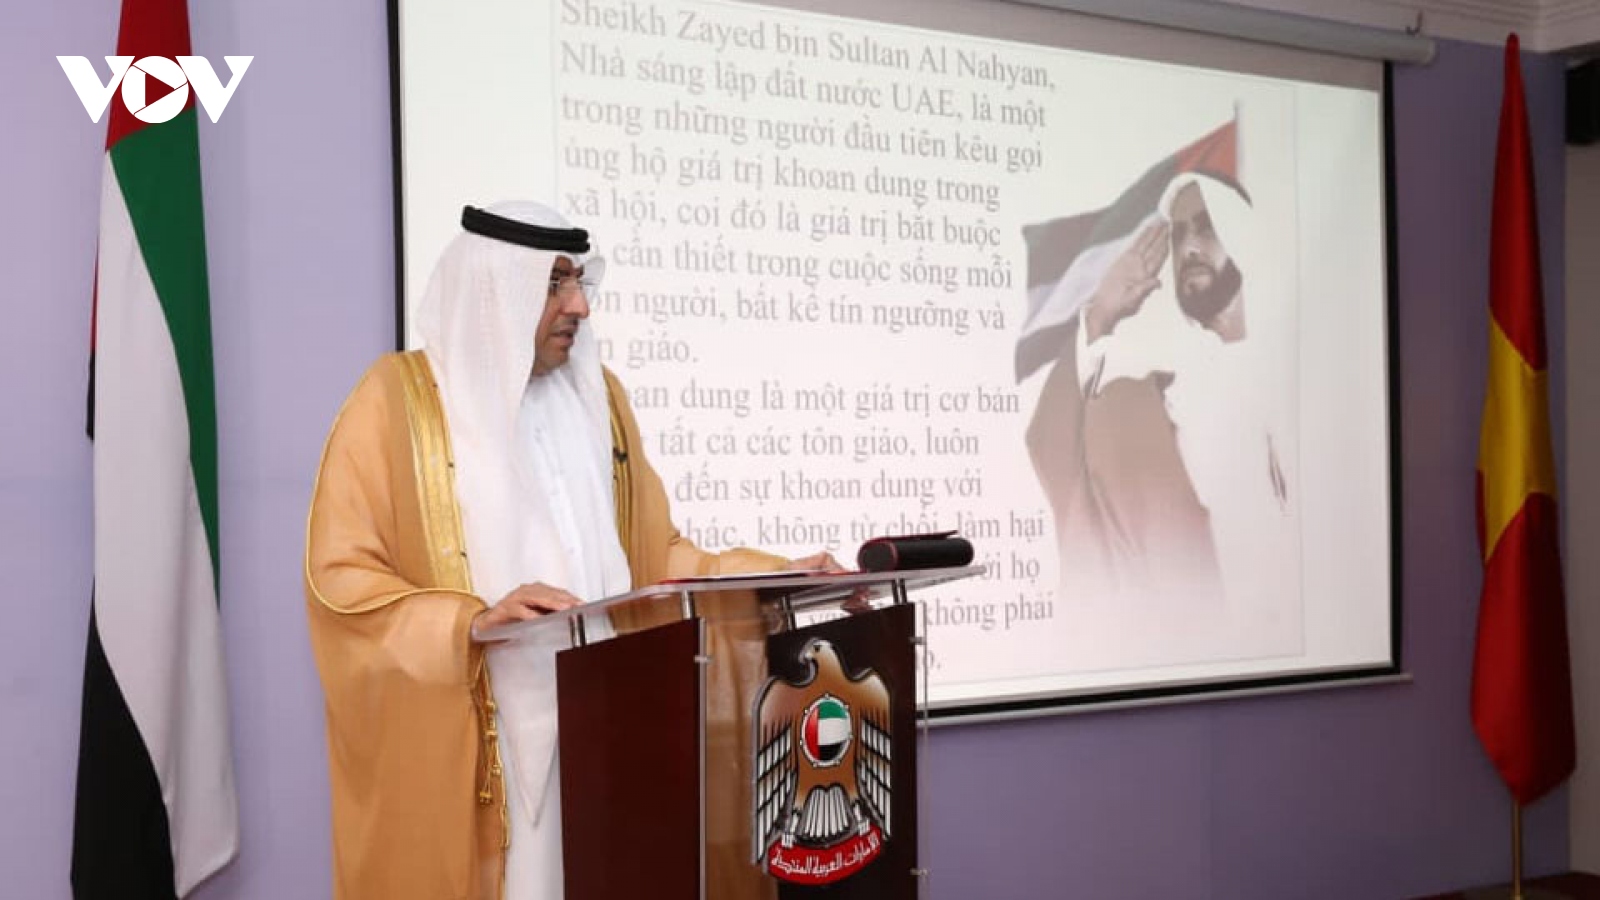 Đại sứ quán UAE tại Hà Nội tổ chức kỷ niệm Ngày Quốc tế Khoan dung